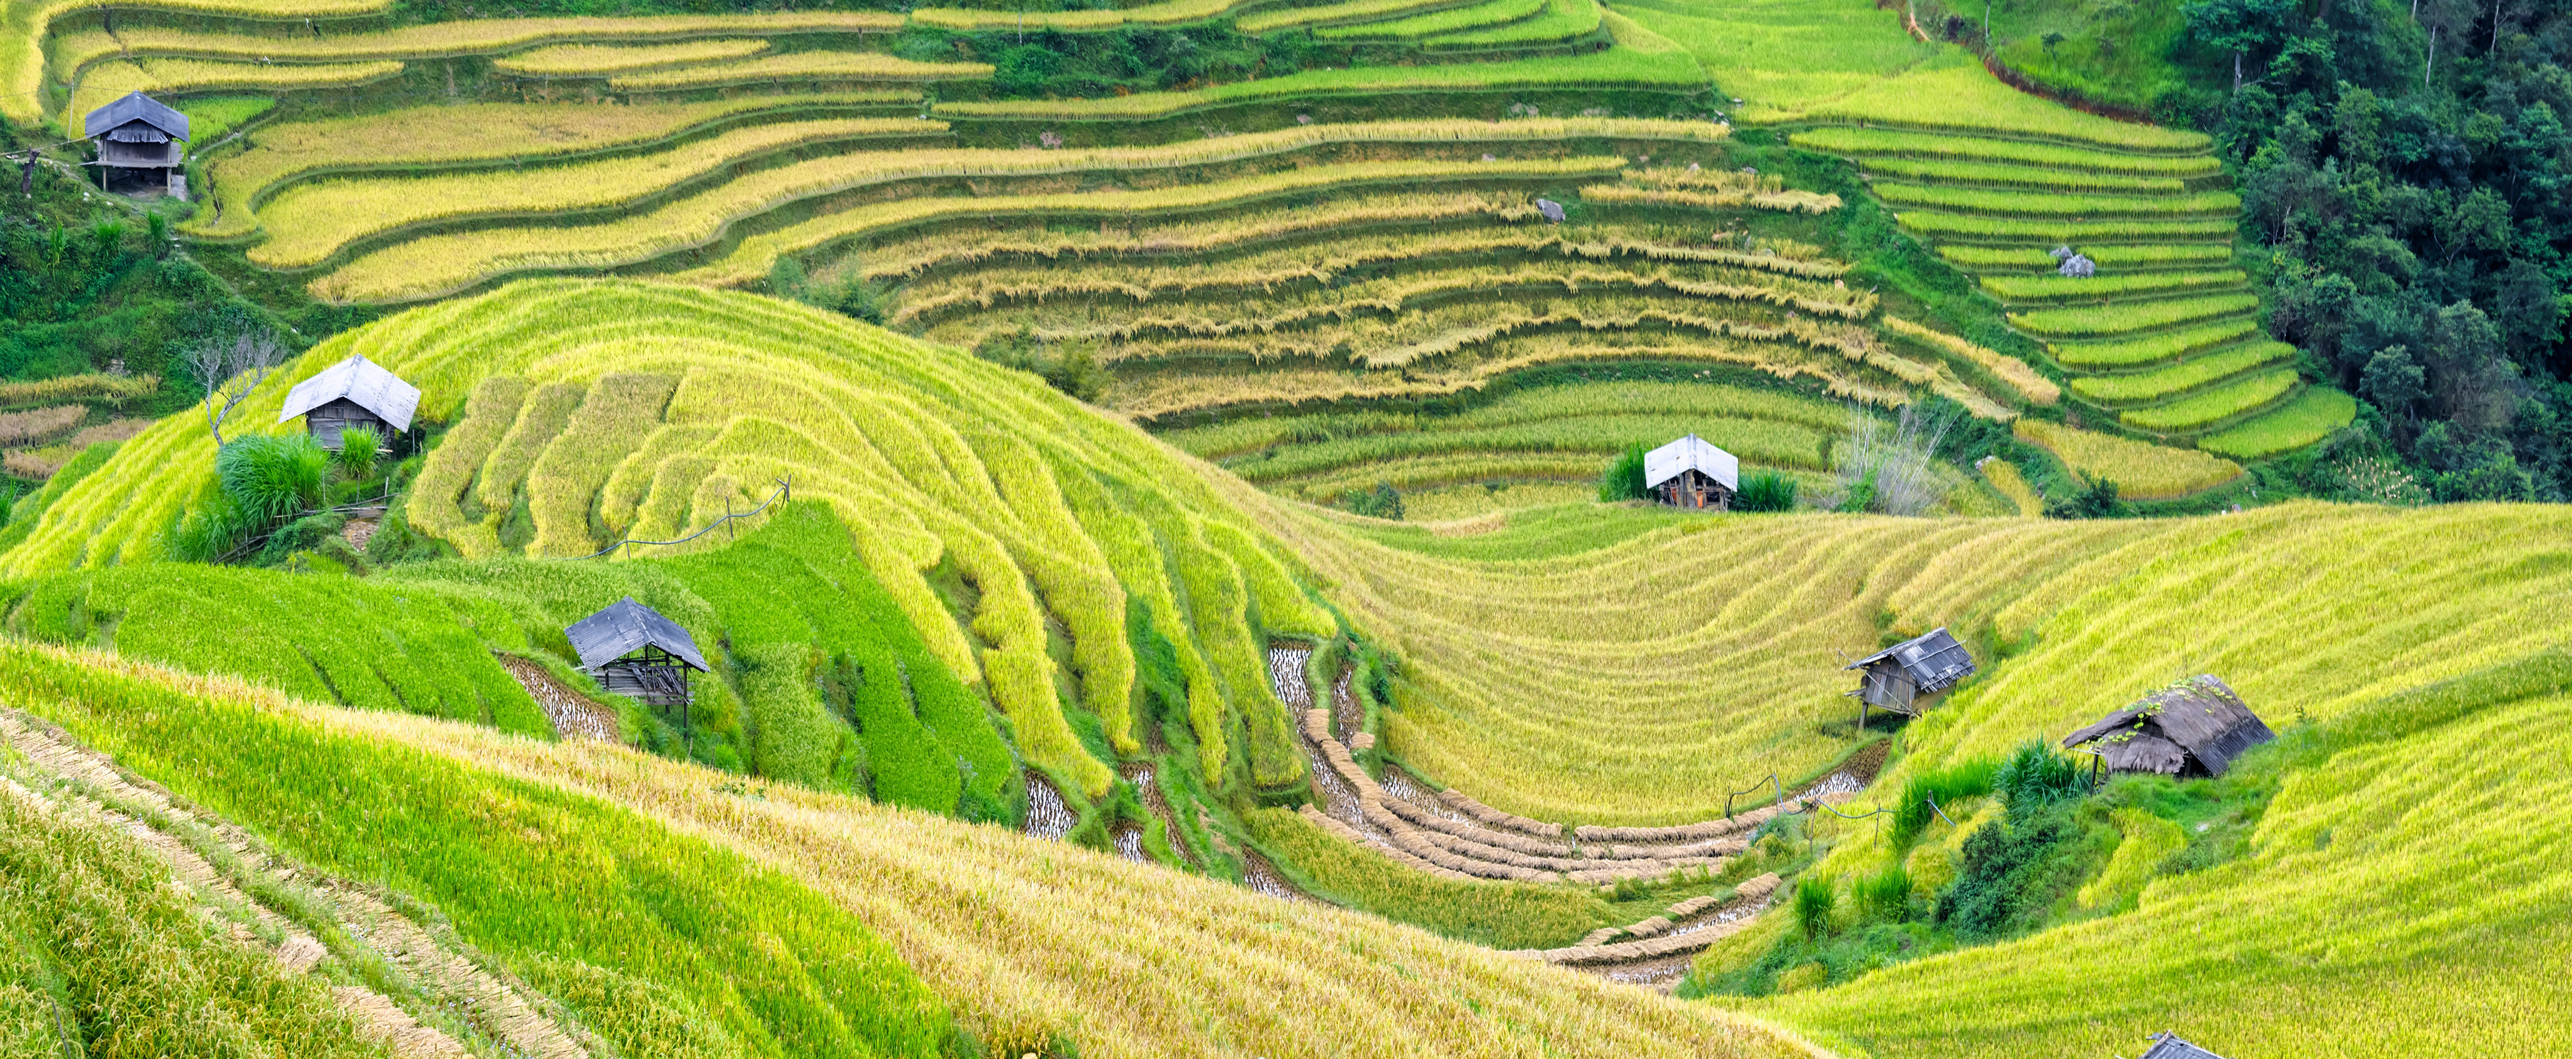 Vietnam hillside